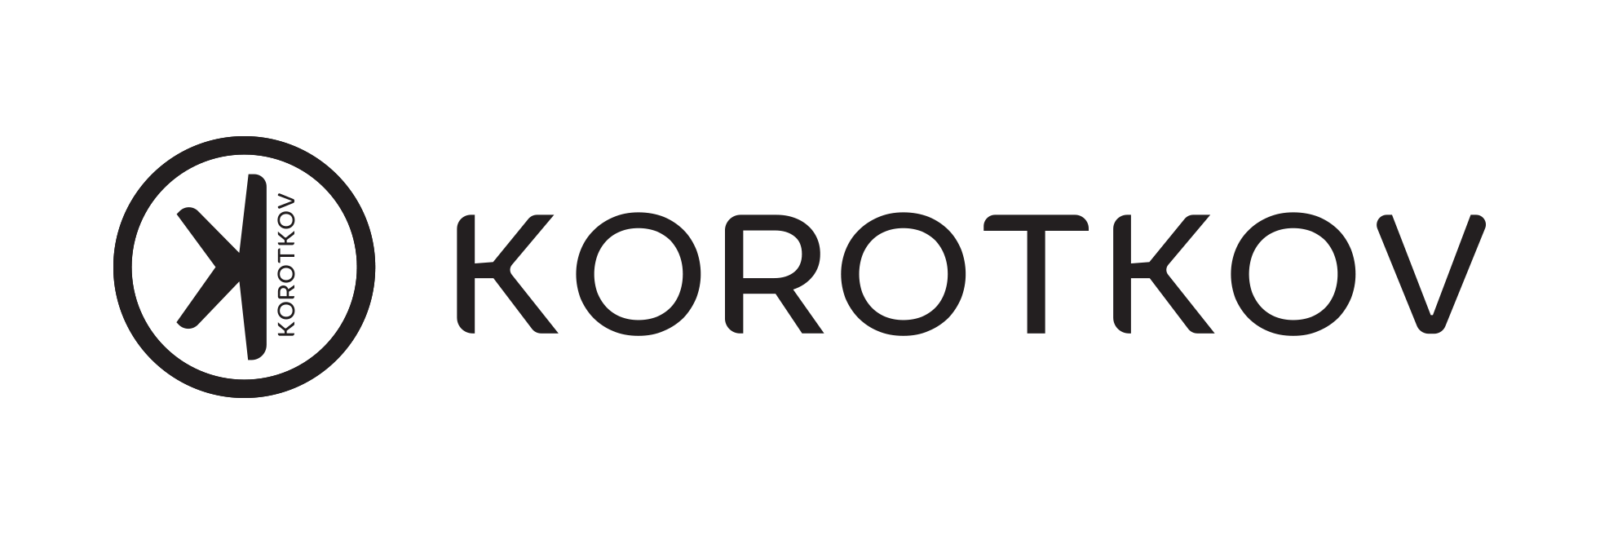 Korotkov Archive